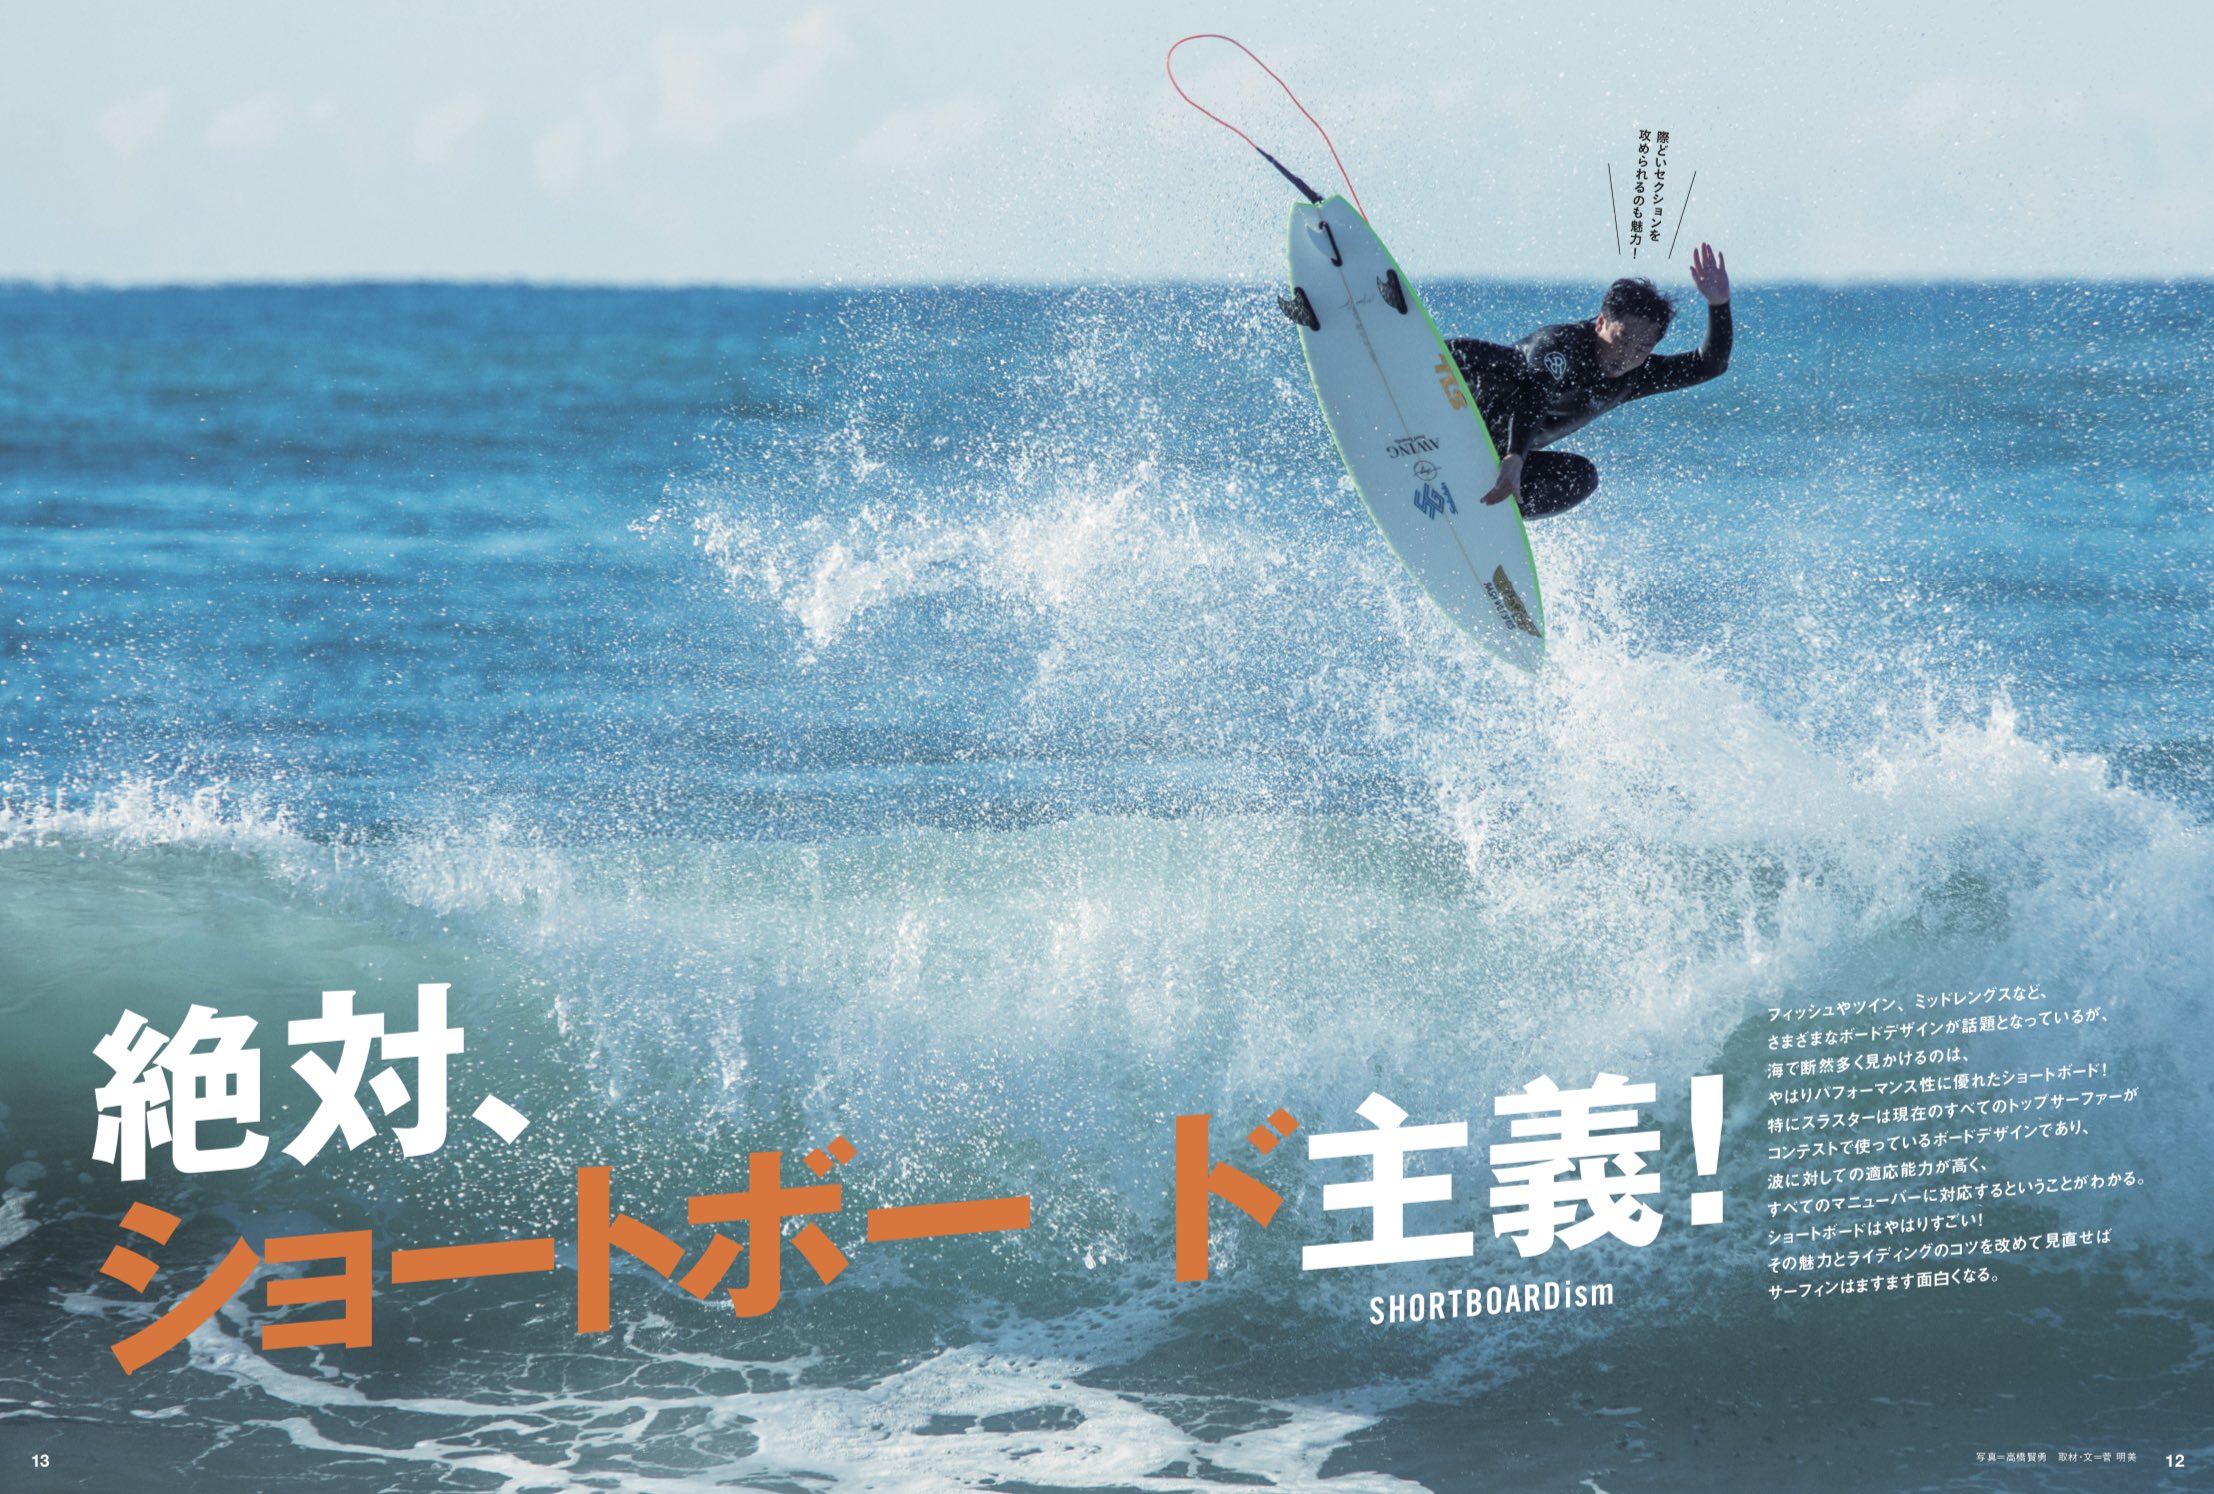 2月10日発売のサーフィンライフ3月号巻頭特集はハウトゥ「絶対ショートボード主義!」 | SURFMEDIA